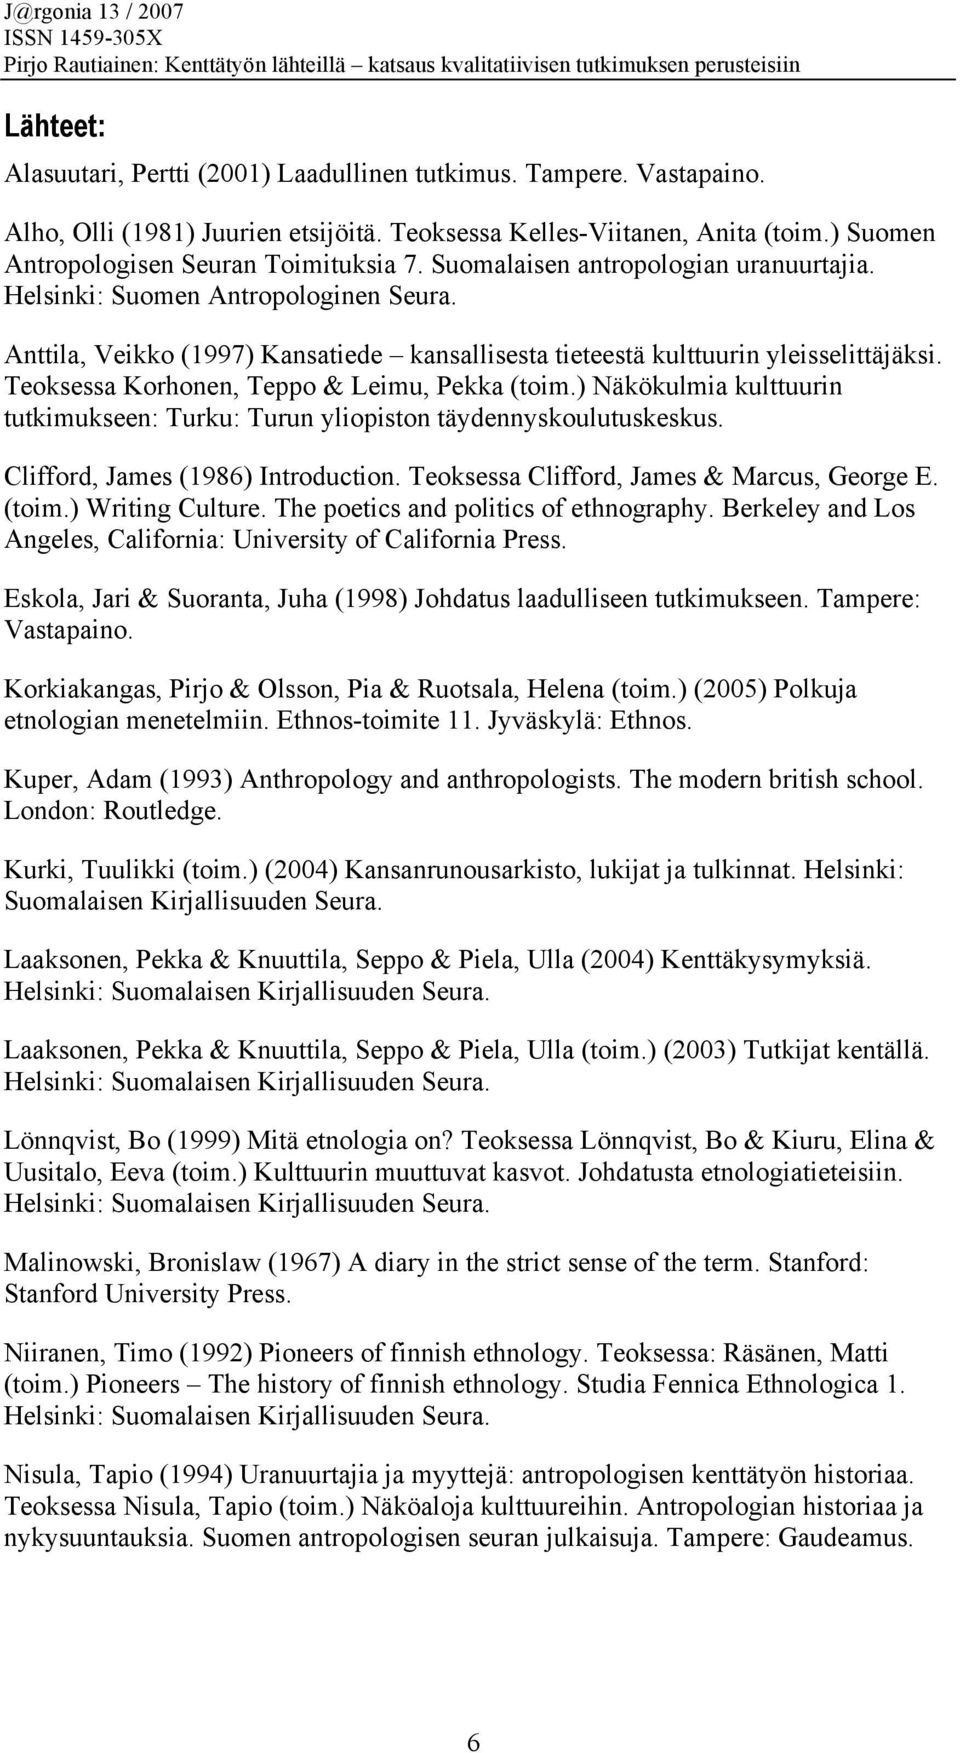 Teoksessa Korhonen, Teppo & Leimu, Pekka (toim.) Näkökulmia kulttuurin tutkimukseen: Turku: Turun yliopiston täydennyskoulutuskeskus. Clifford, James (1986) Introduction.